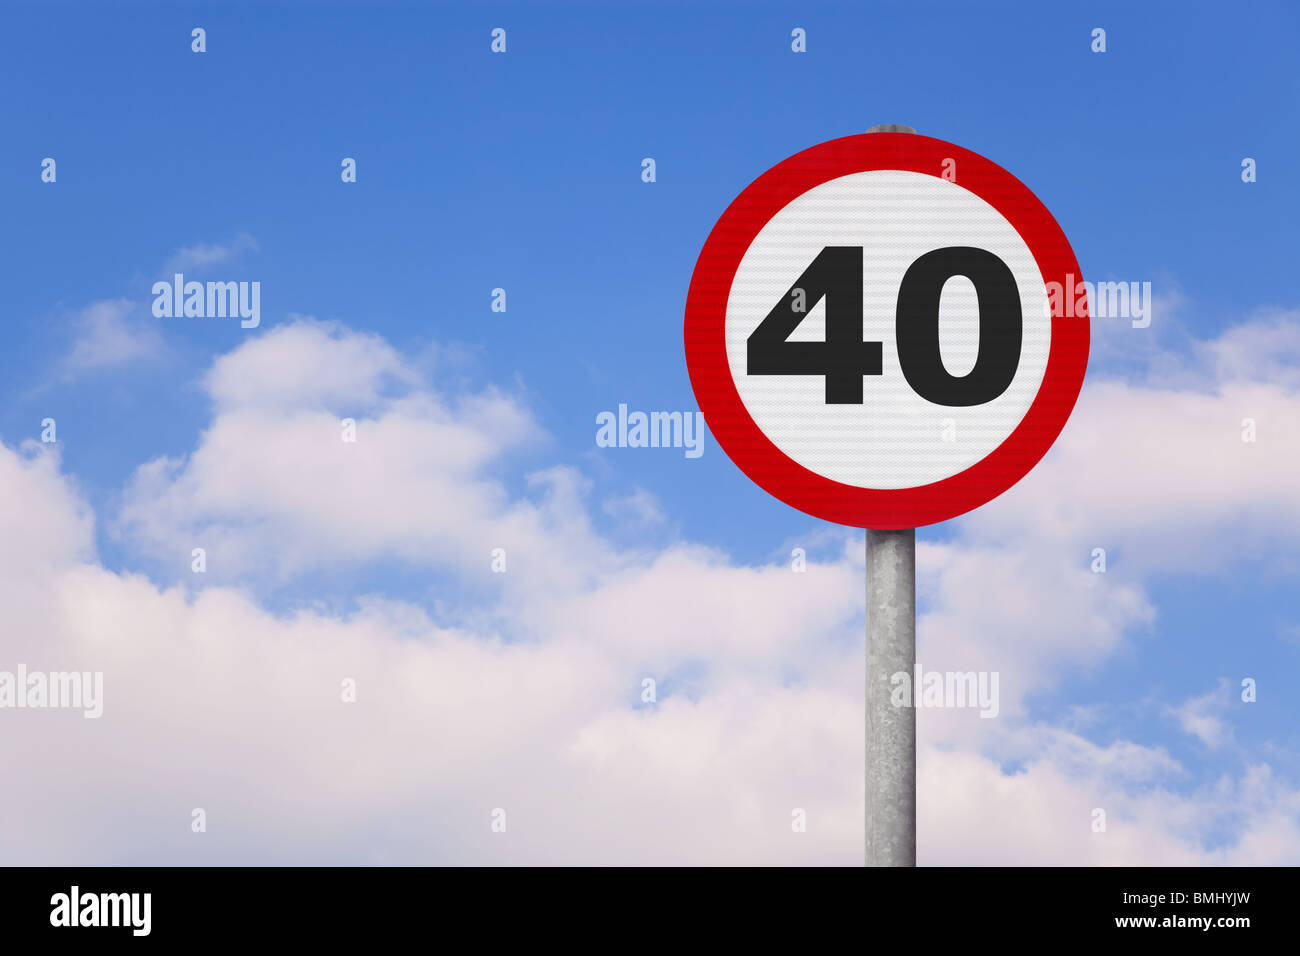 Eine Runde Roadsign mit der Nummer 40 vor einem blauen bewölkten Himmel. Stockfoto